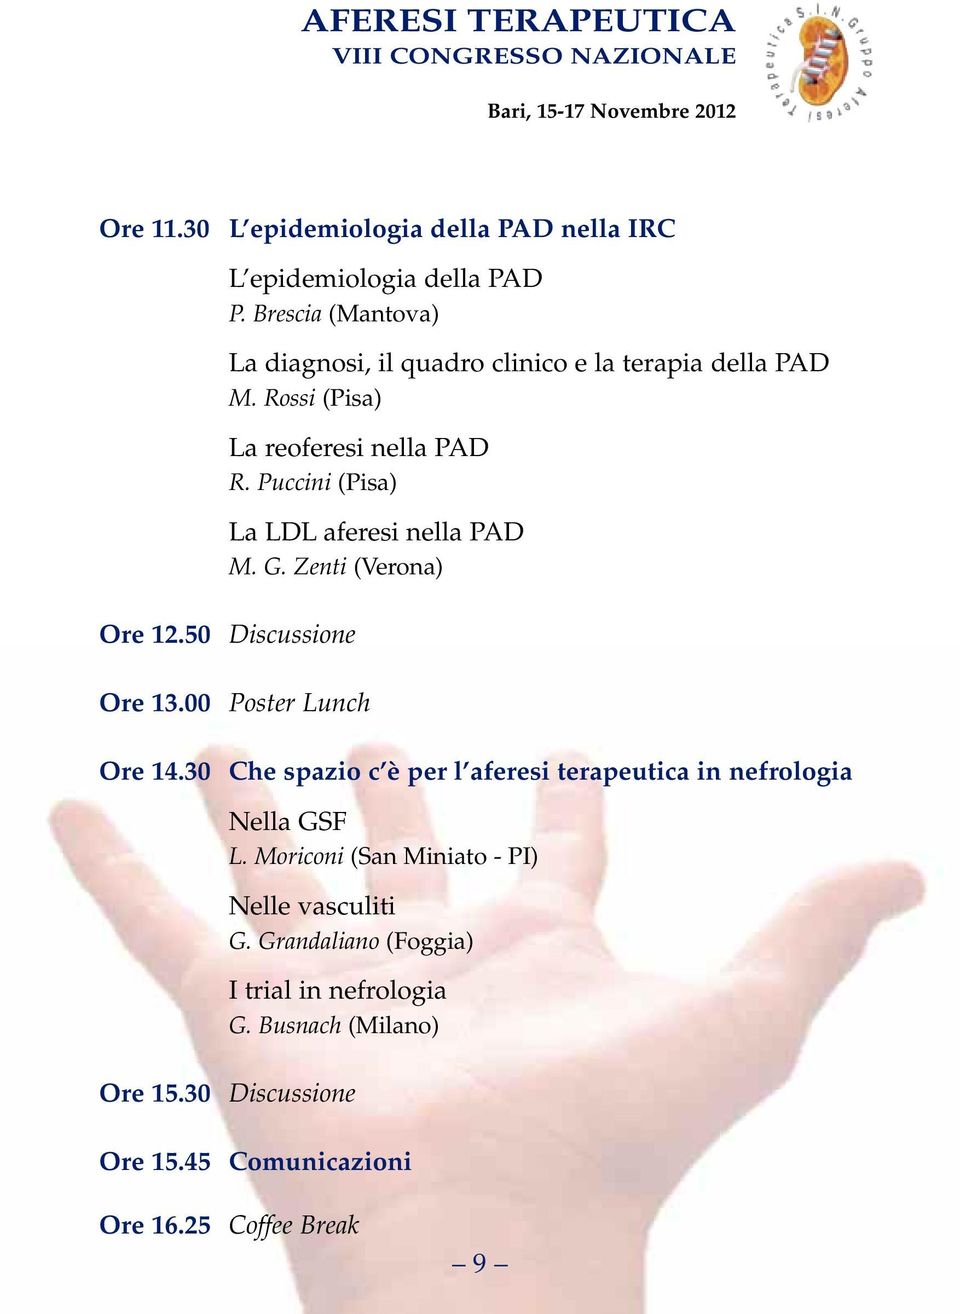 Puccini (Pisa) La LDL aferesi nella PAD M. G. Zenti (Verona) Ore 12.50 Discussione Ore 13.00 Poster Lunch Ore 14.